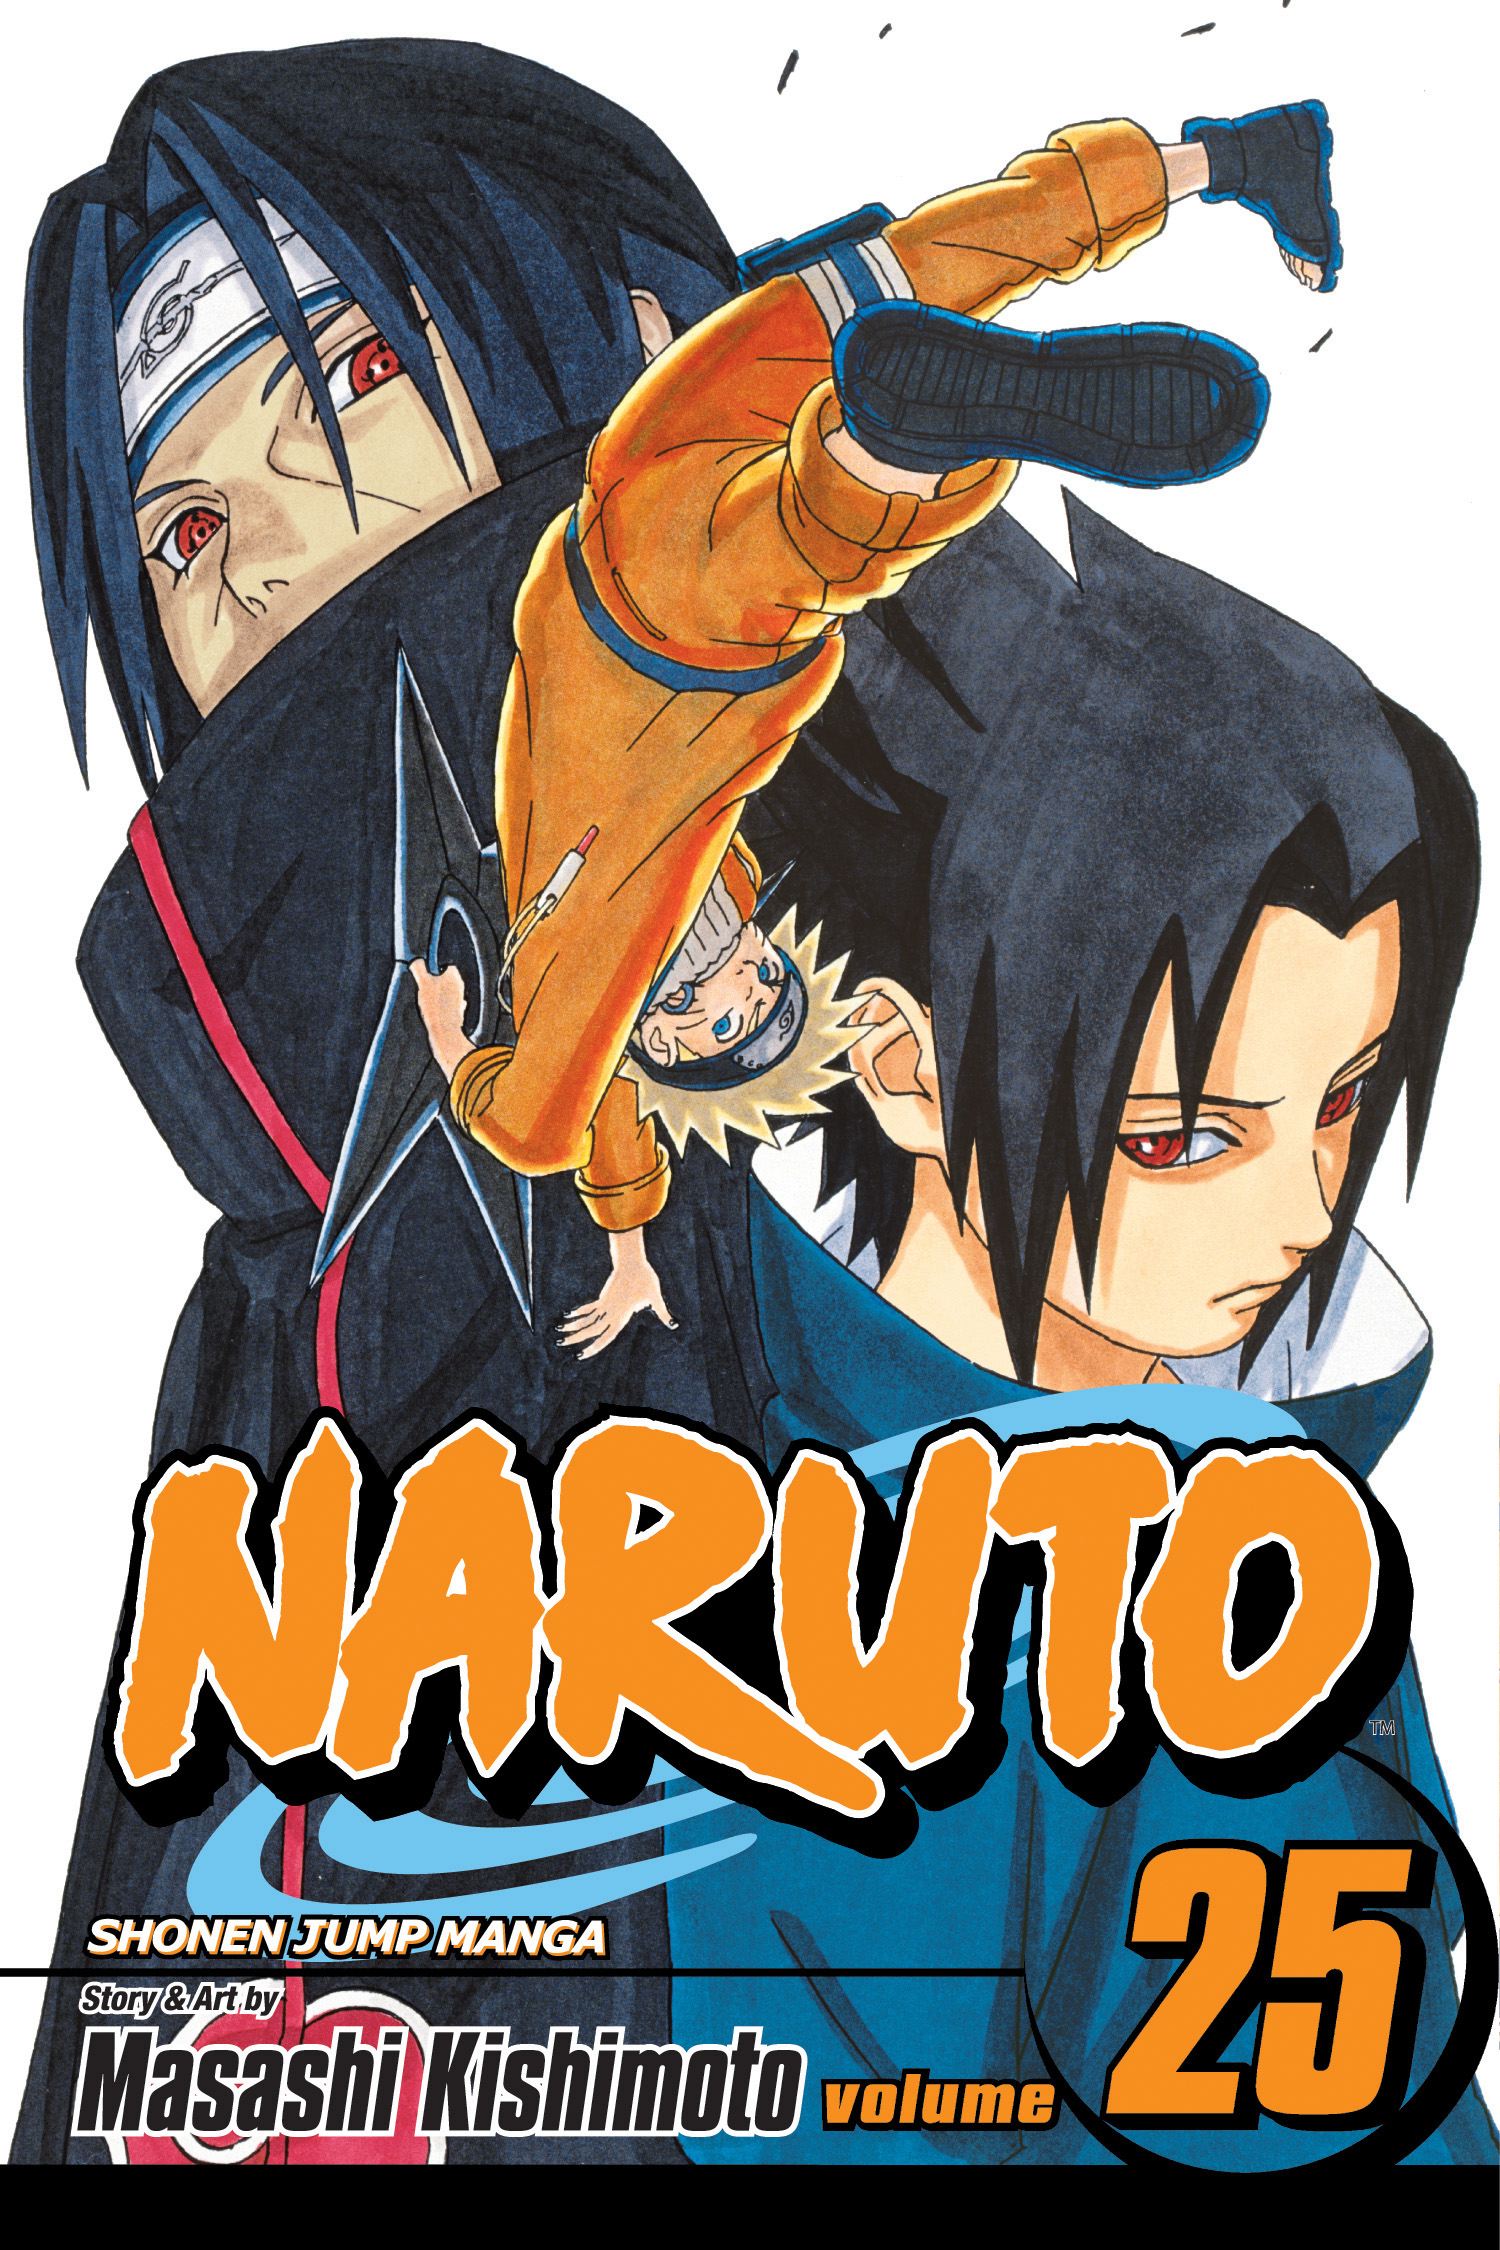 Naruto Vol. 25 | Kishimoto, Masashi (Auteur)